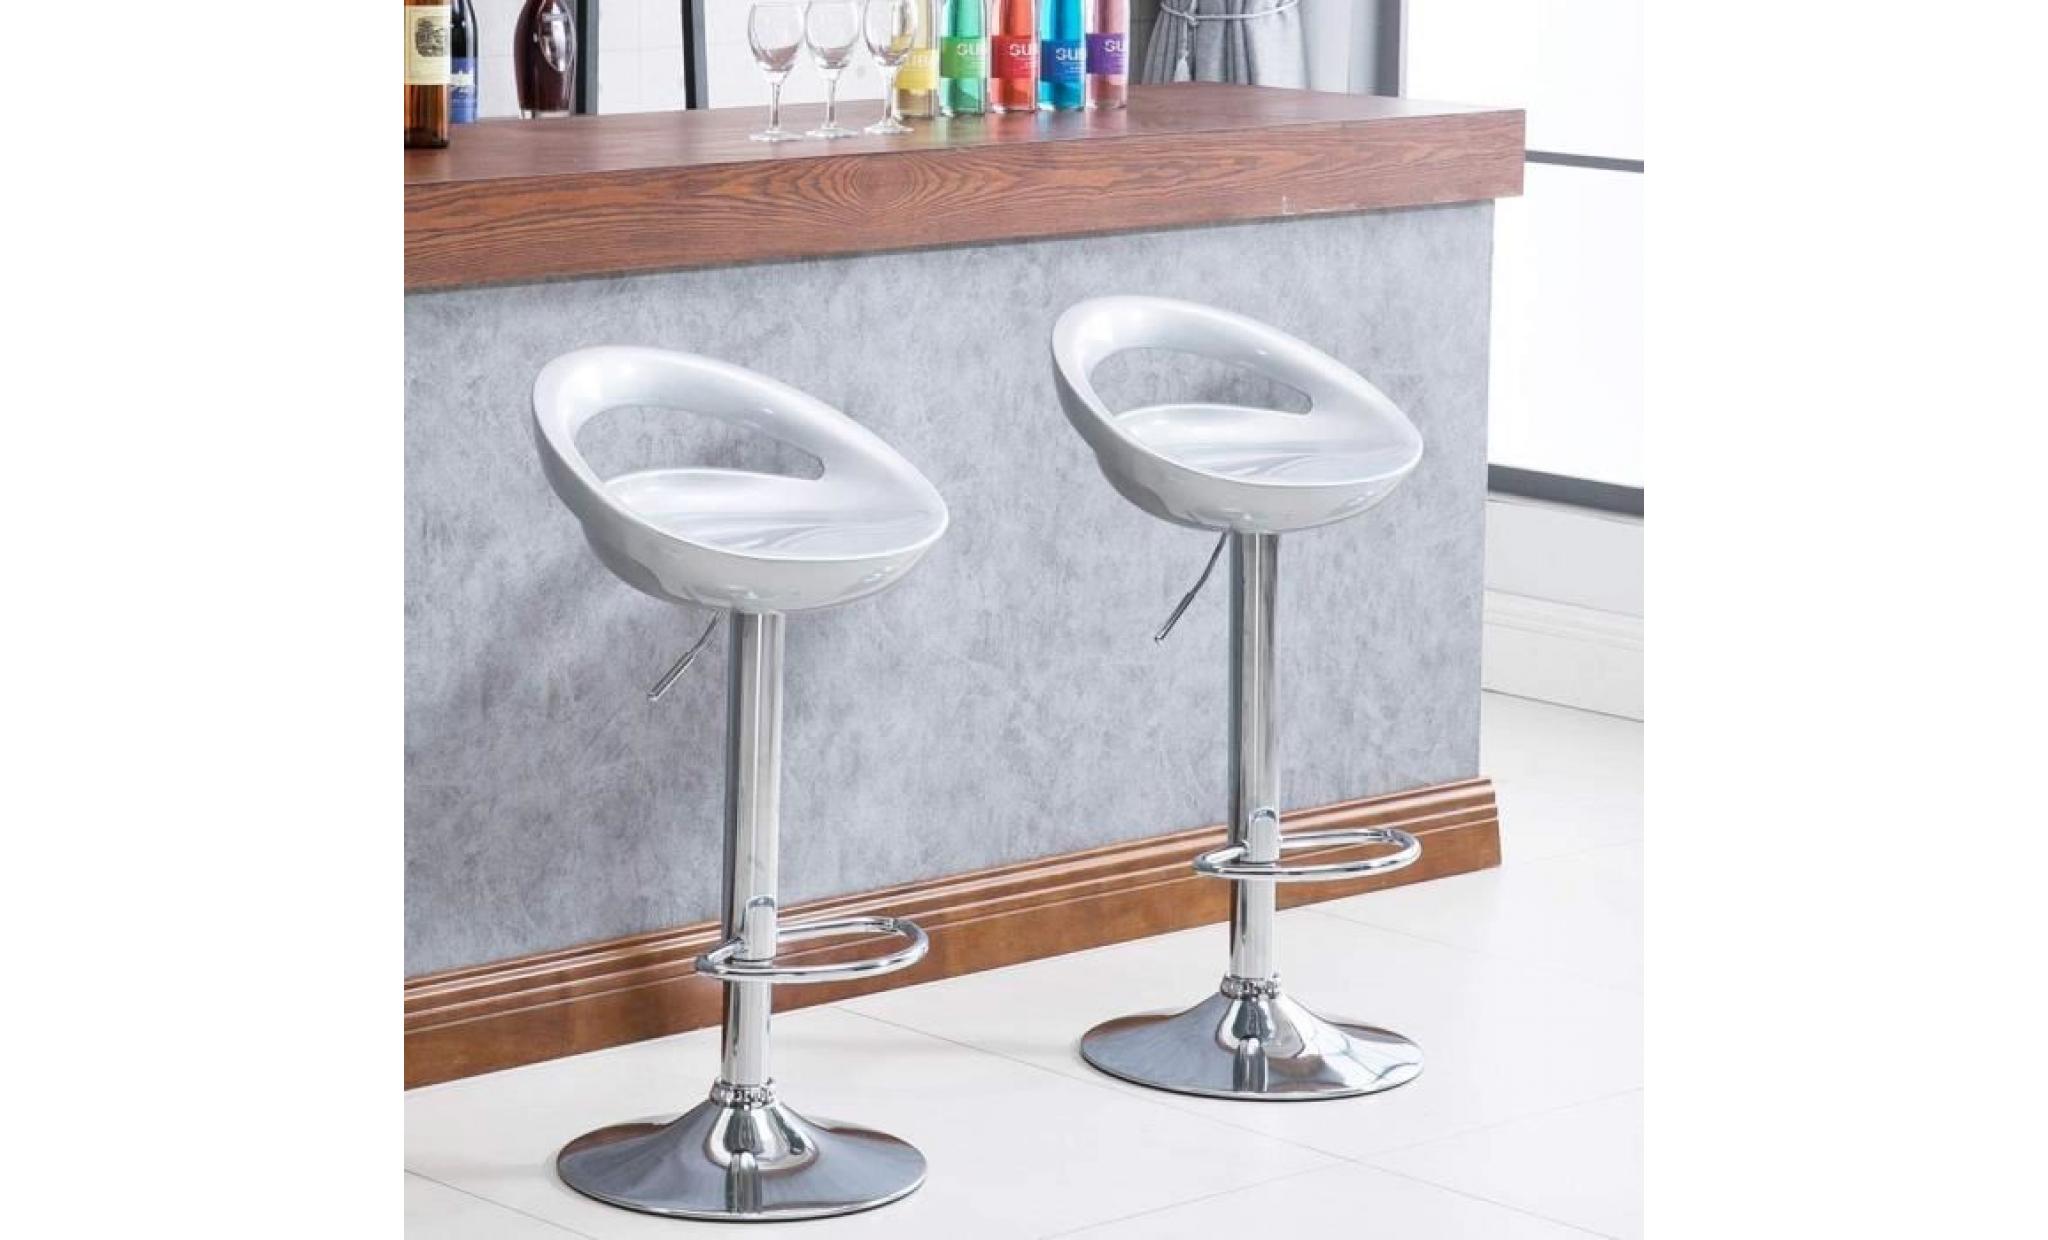 kangfun tabourets de bar lot de 4 en abs gris， chaise de bar en métal chromé pas cher